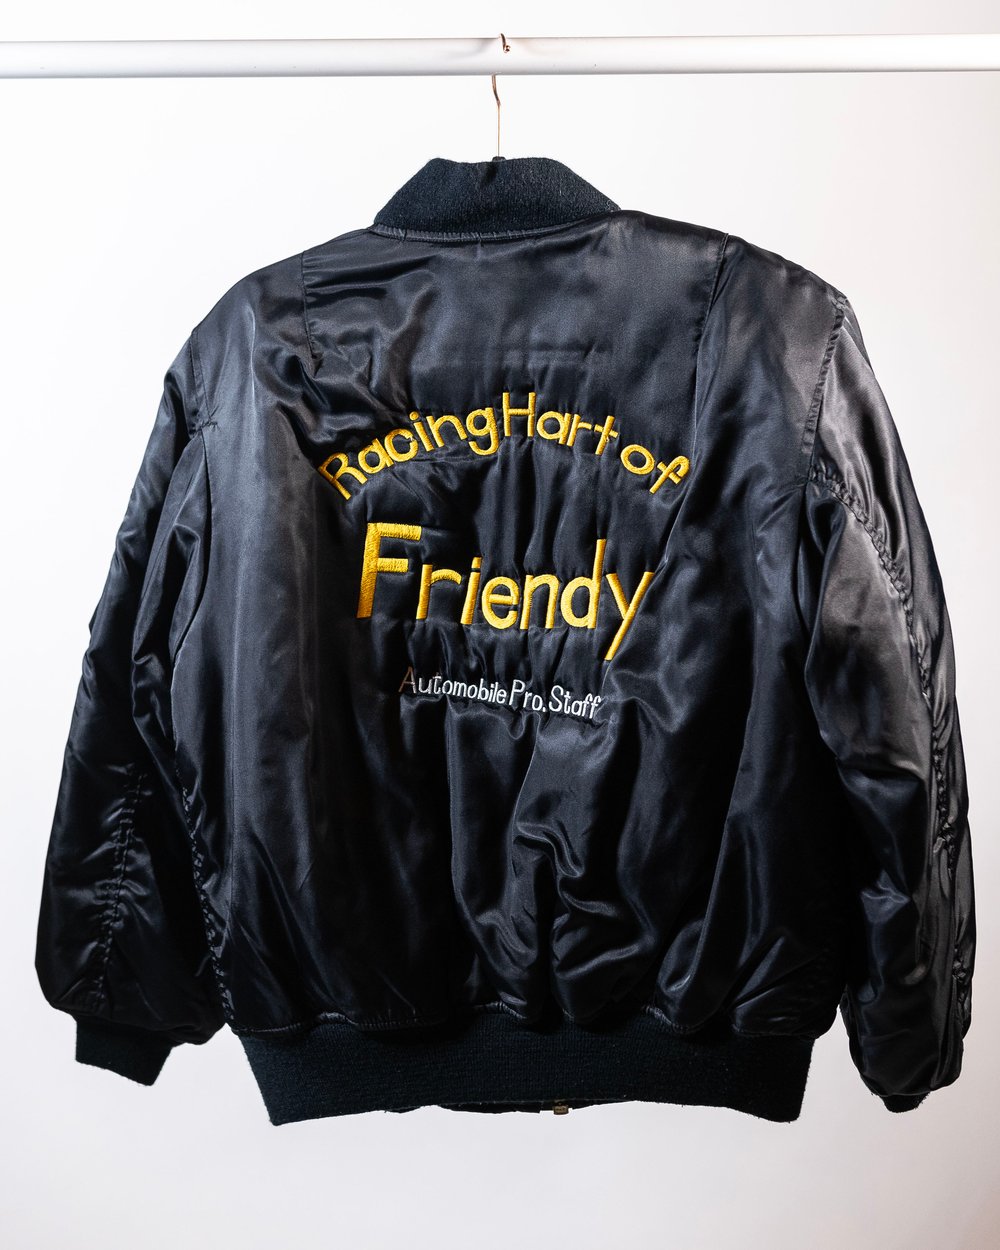 Racing Hart of Friendy Jacket (Medium)